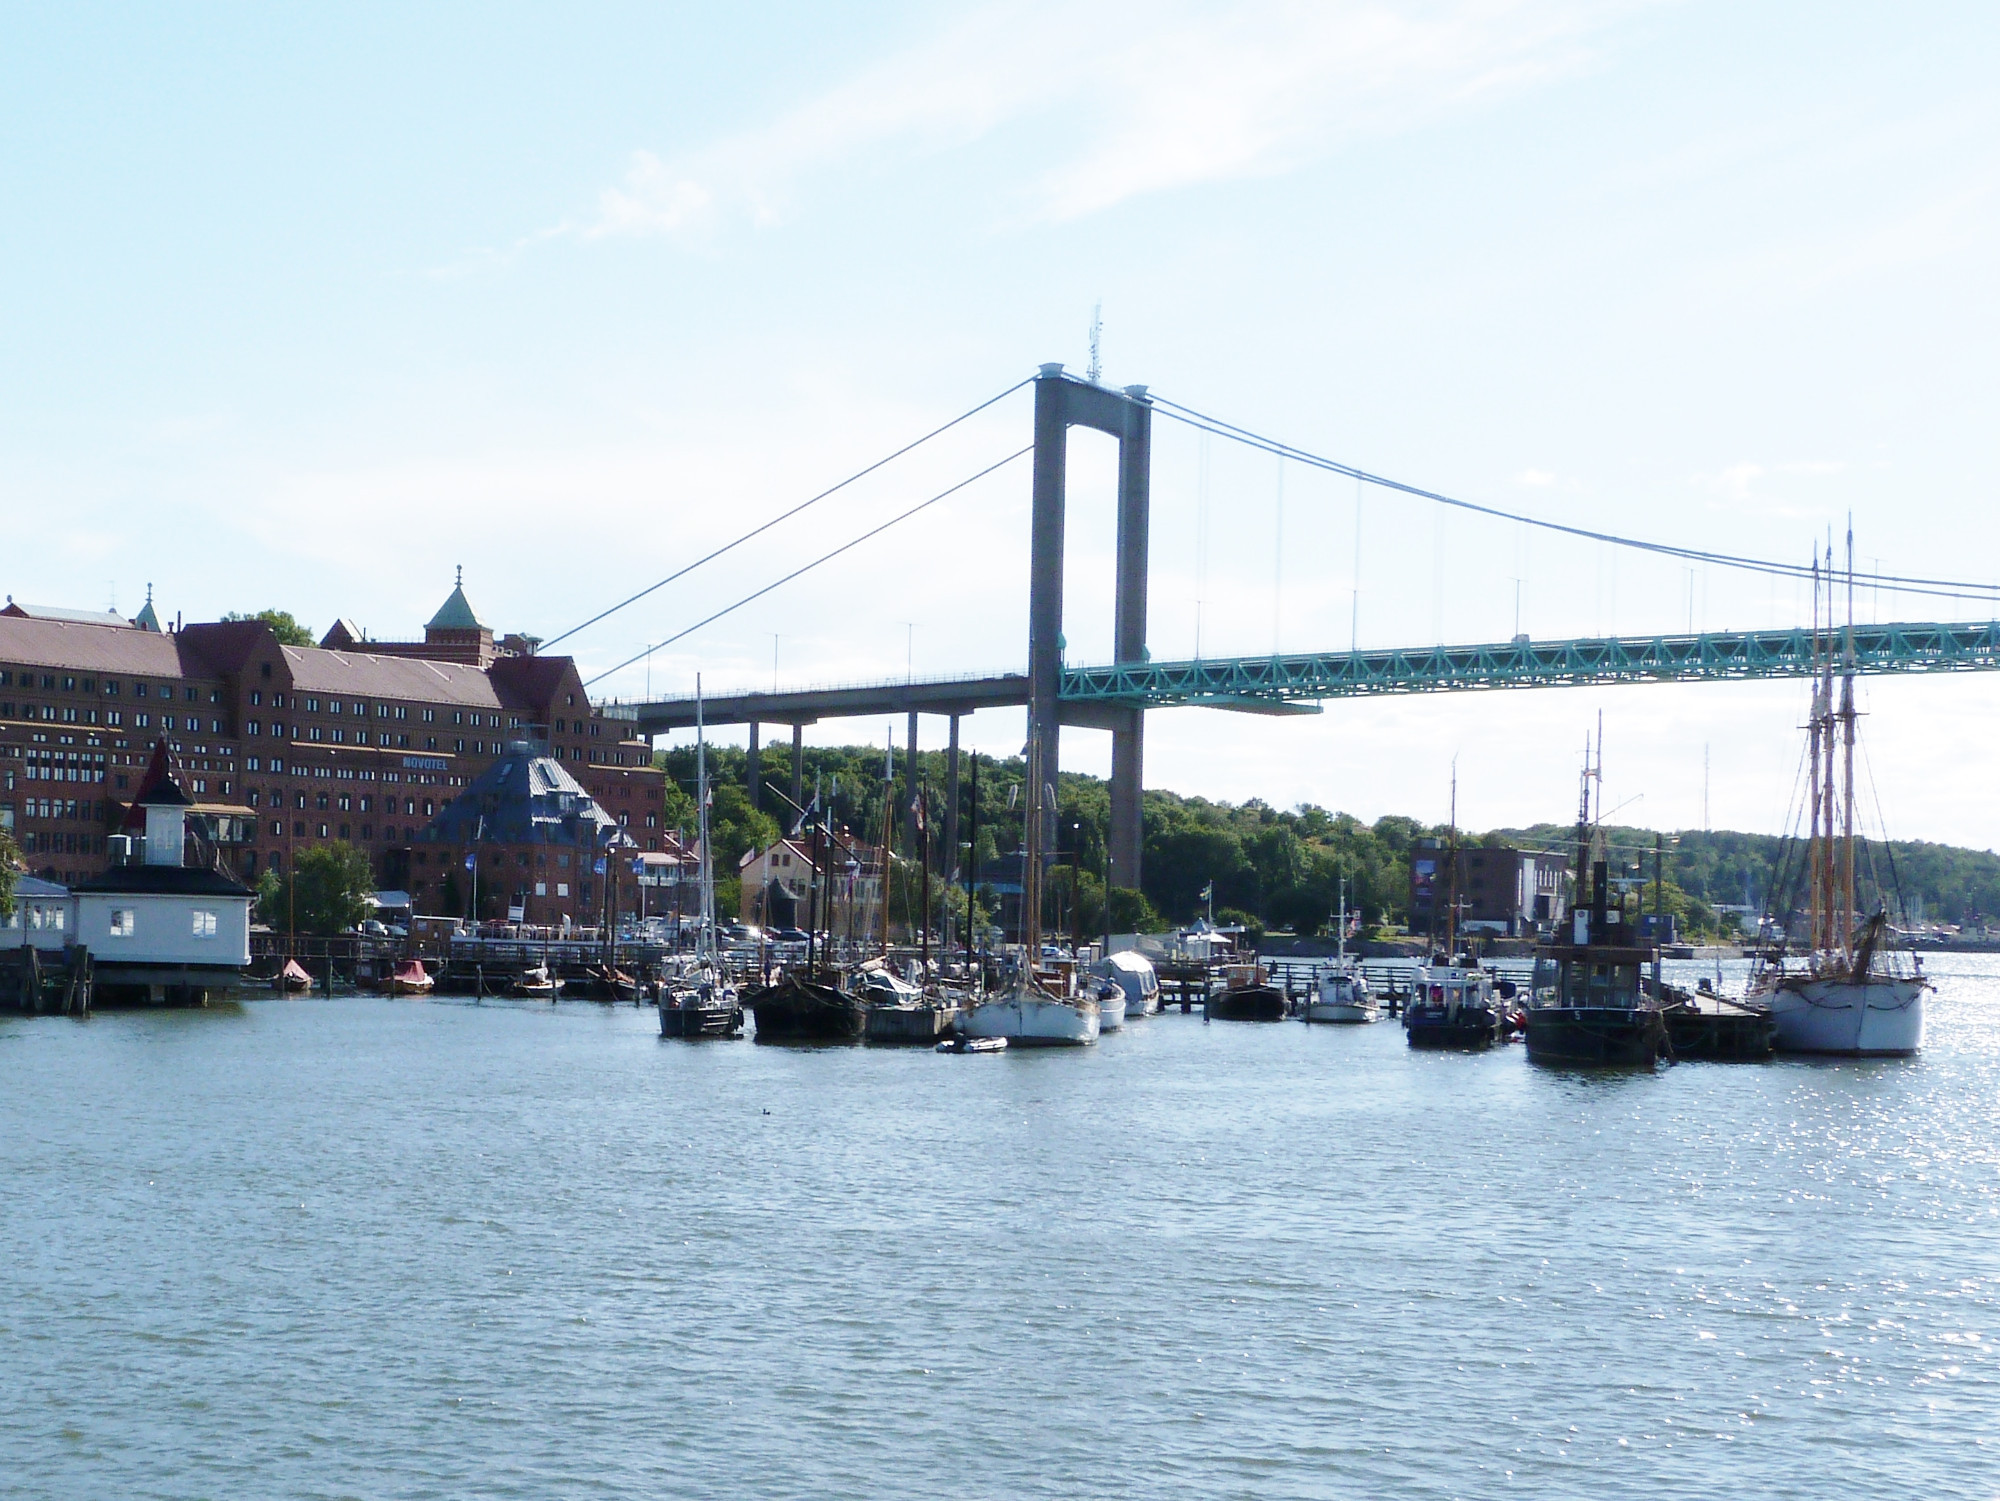 Avsborgsbron Bridge